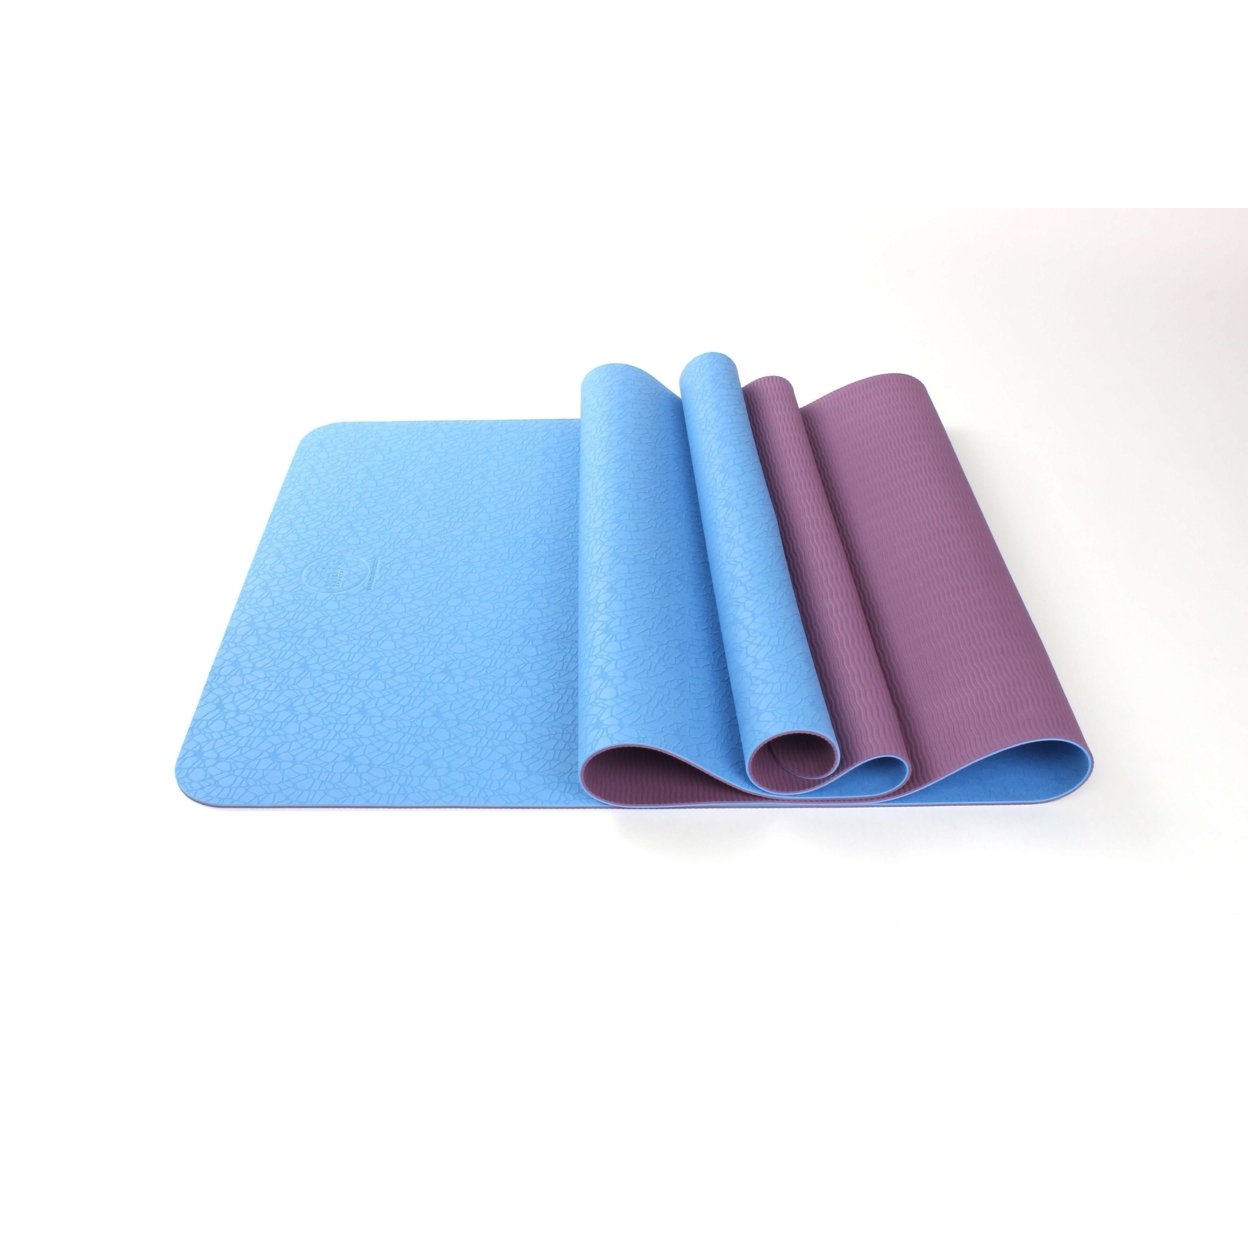 2-Tone TPE Premium Yoga Mat - Pink/Gray